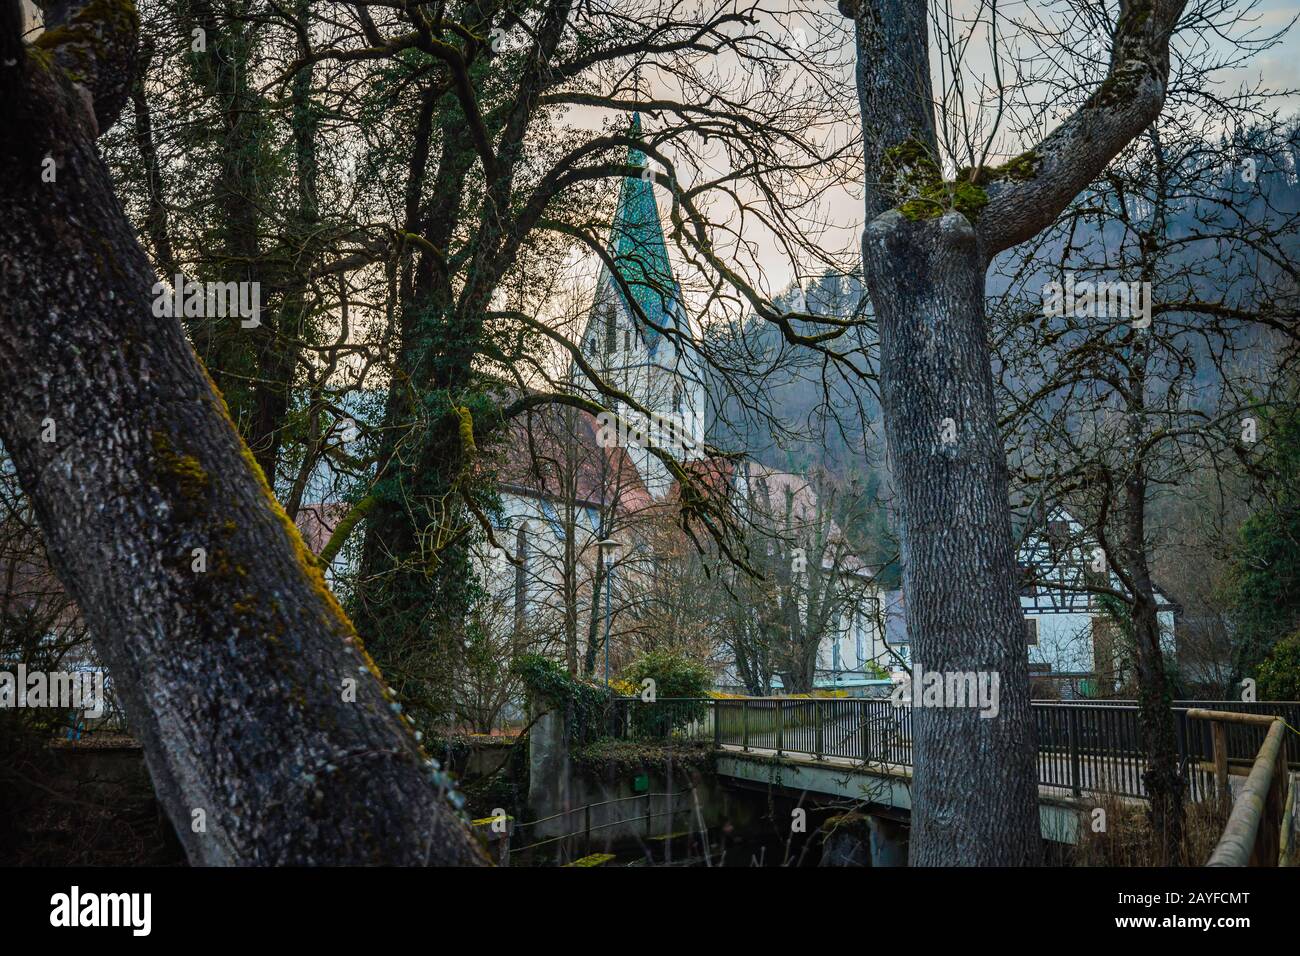 Unterschiedliche Sicht auf die Kloster blaubeuren durch Bäume in der Nähe des blautopfes. Stockfoto